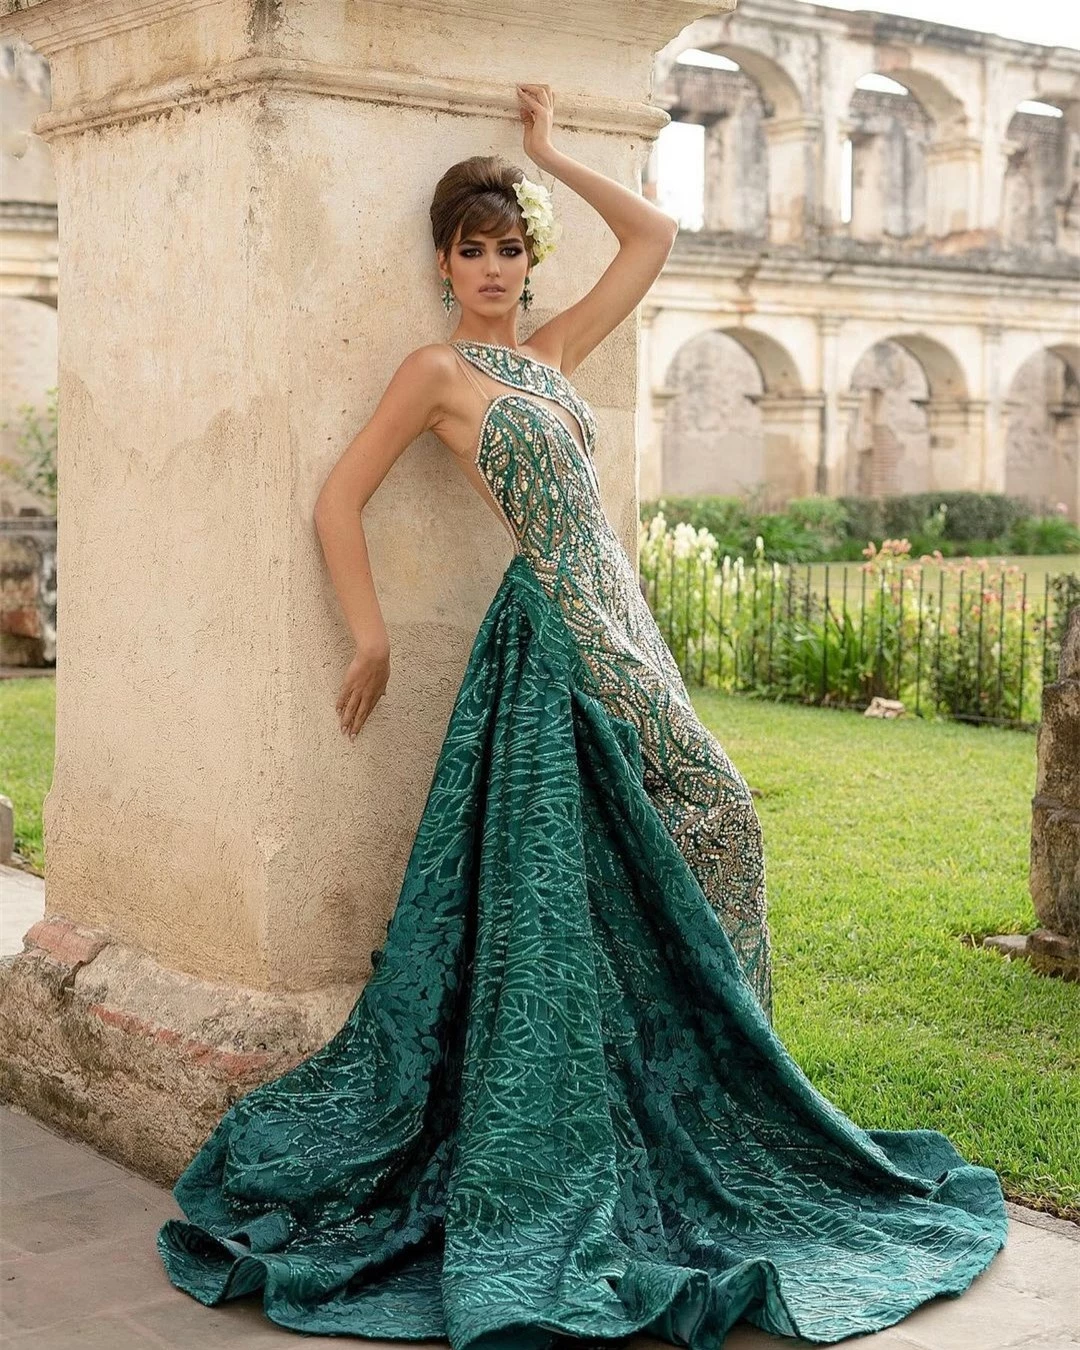 Tân Hoa hậu Hòa bình Guatemala bị chê già nua ảnh 3